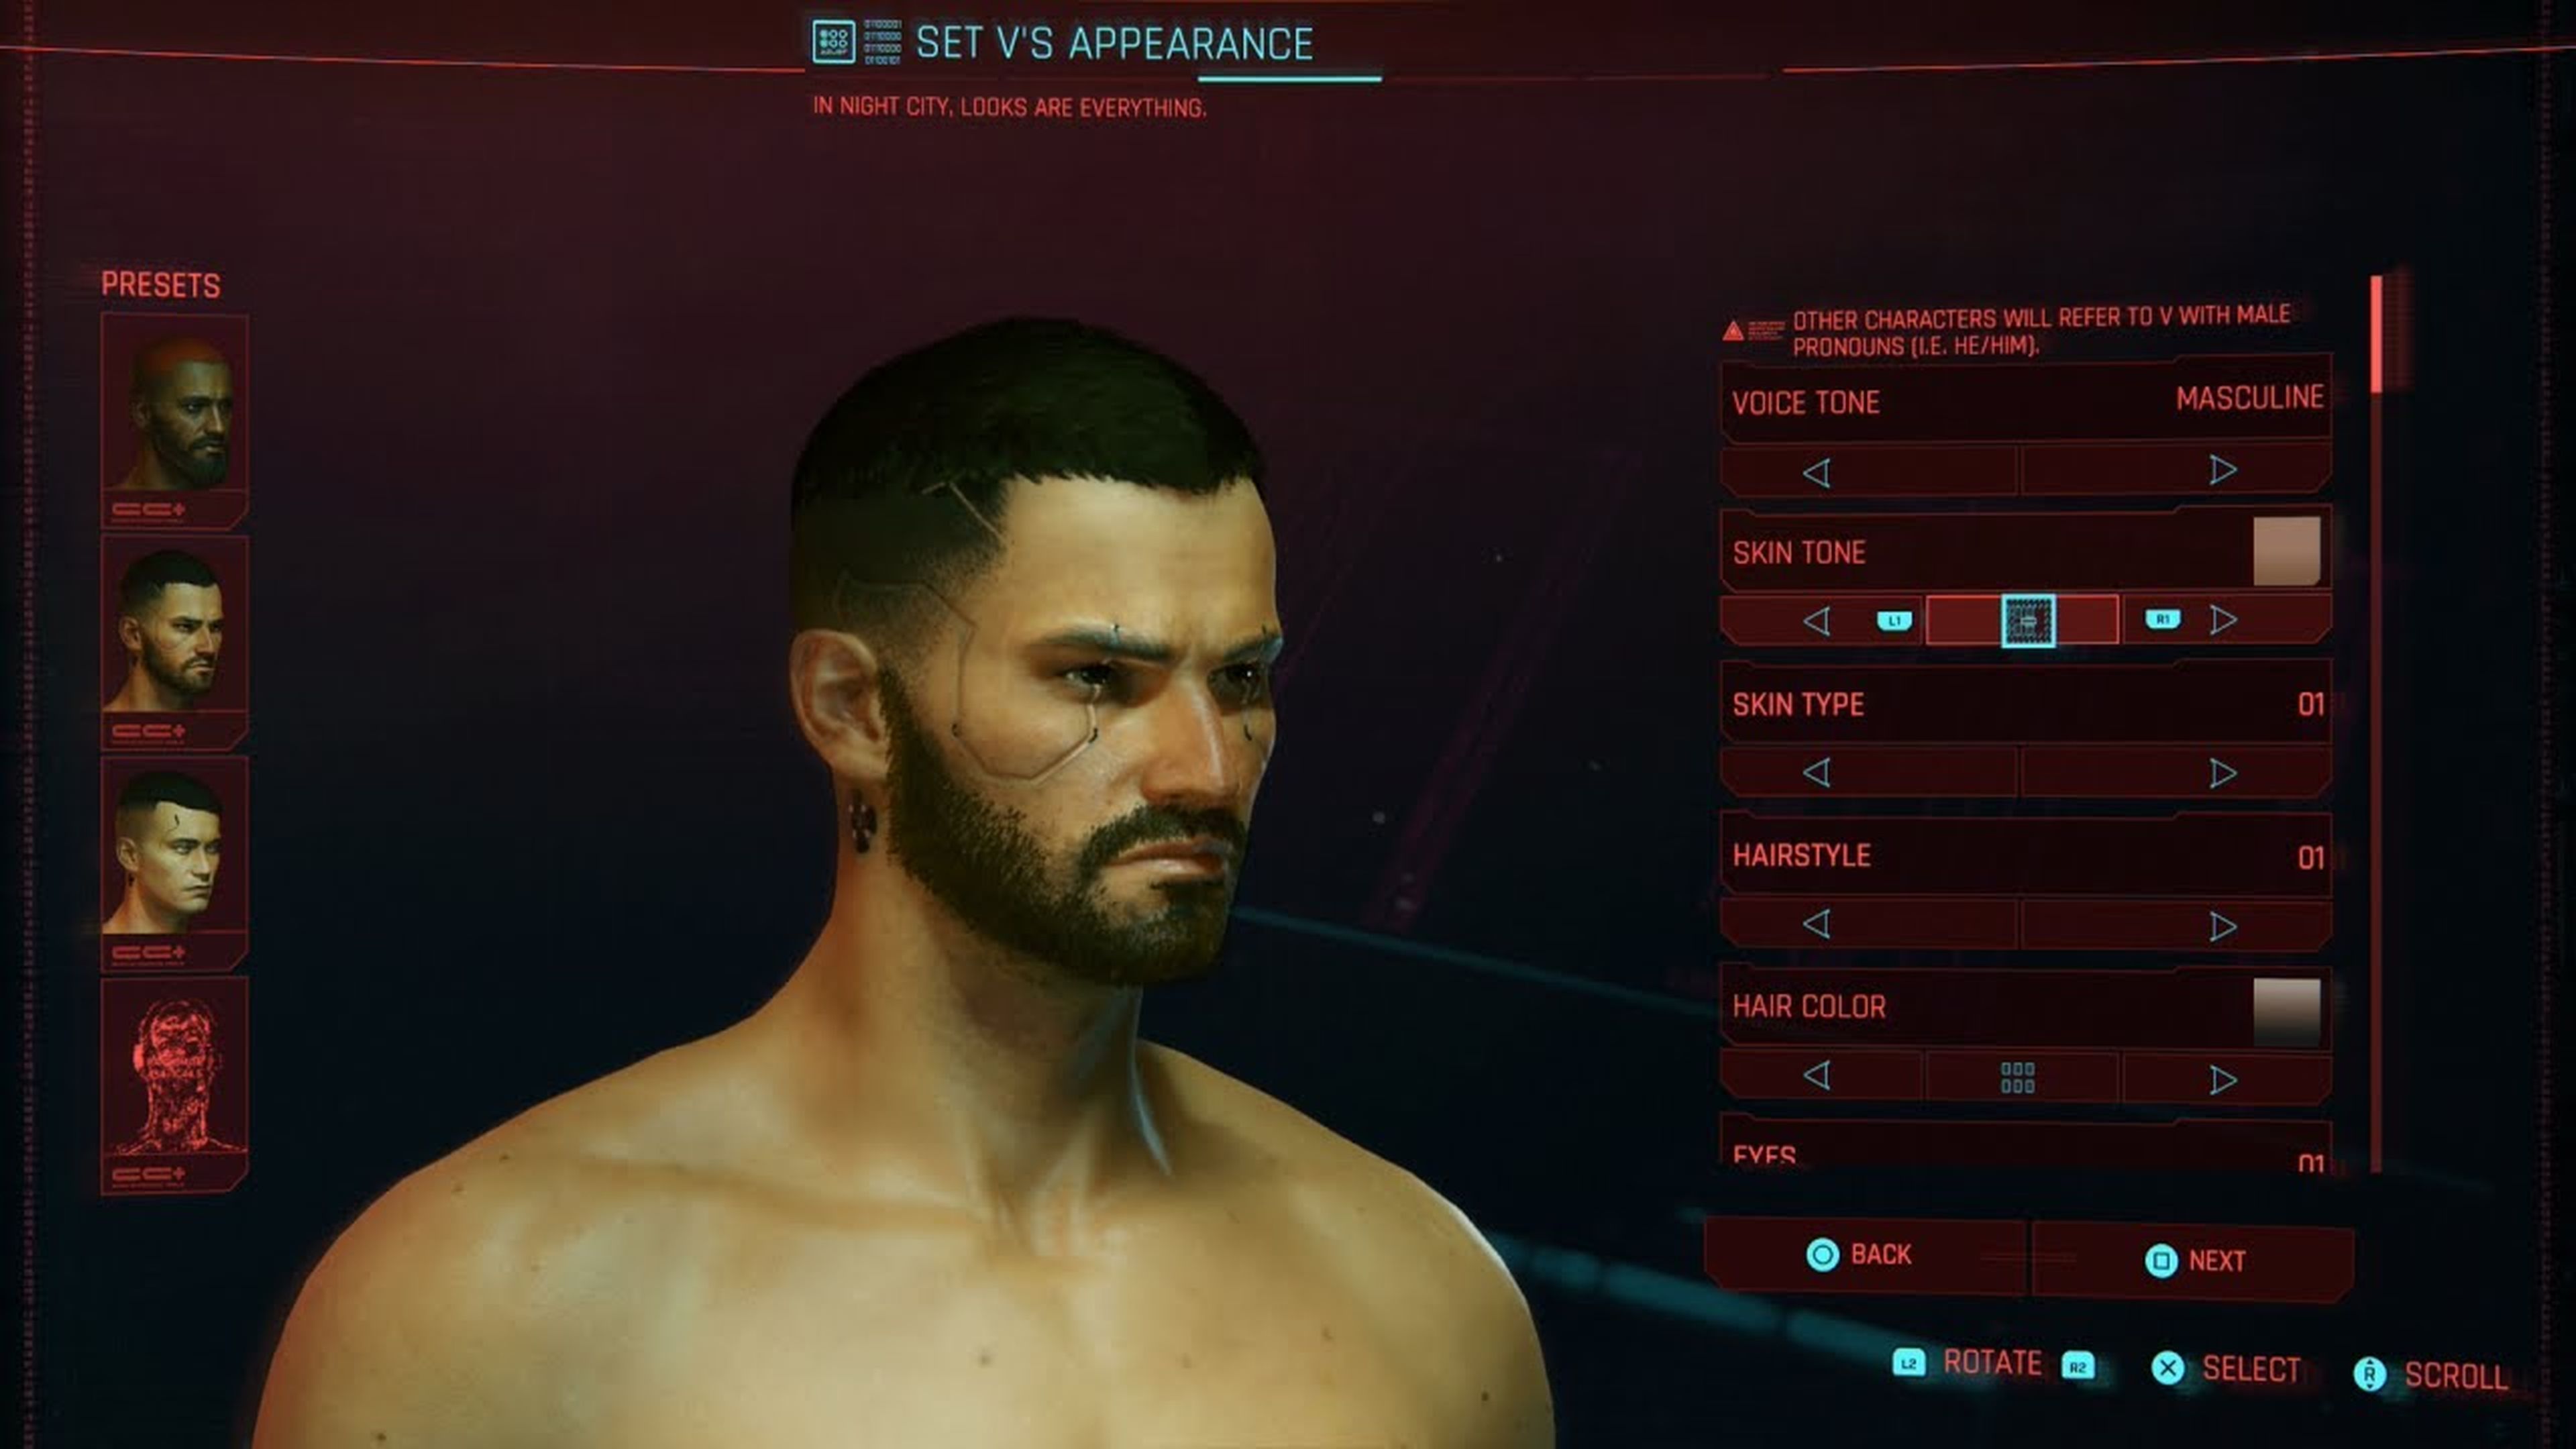 Los juegos especialmente de rol permiten personalizar el avatar con mucha libertad, como el caso de 'Cyberpunk 2077' (imagen).